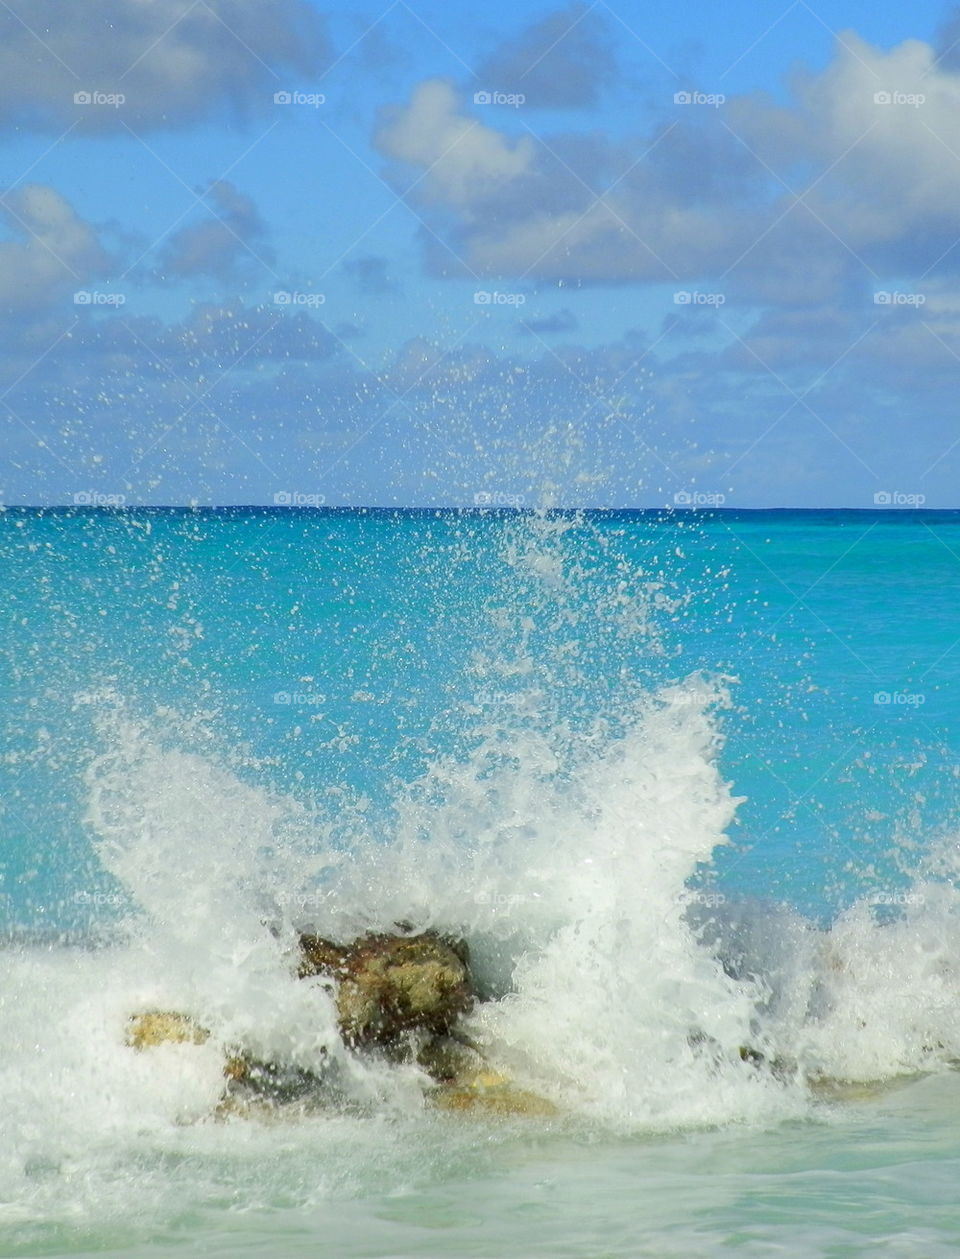 Waves splashing against rock